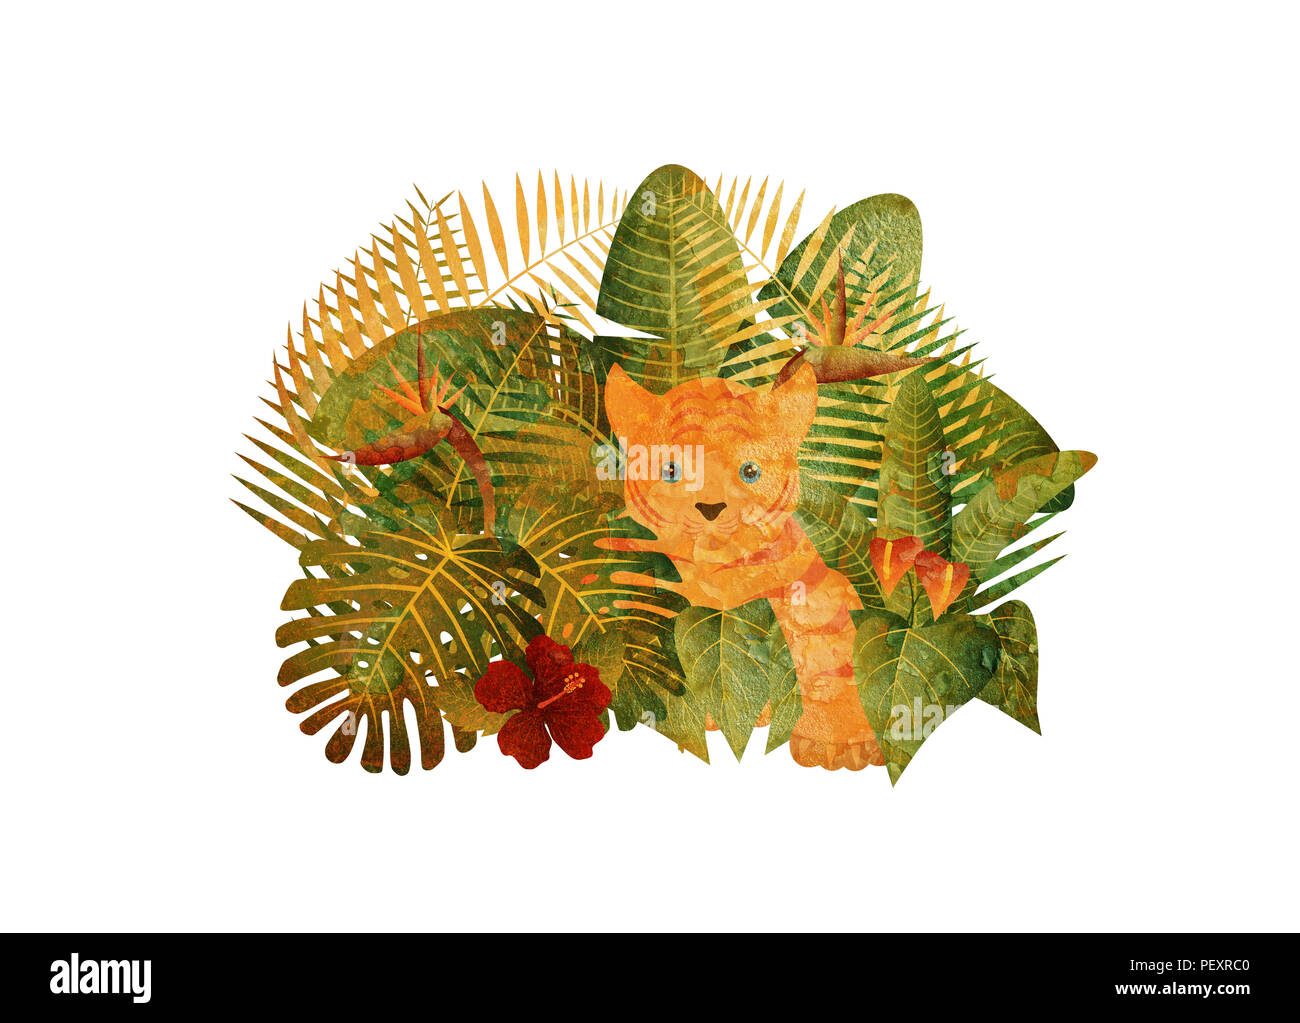 Bosque Tropical Jungle plantas con flores y hojas Tiger Cub Grunge Texture aislado sobre fondo blanco ilustración en color Foto de stock